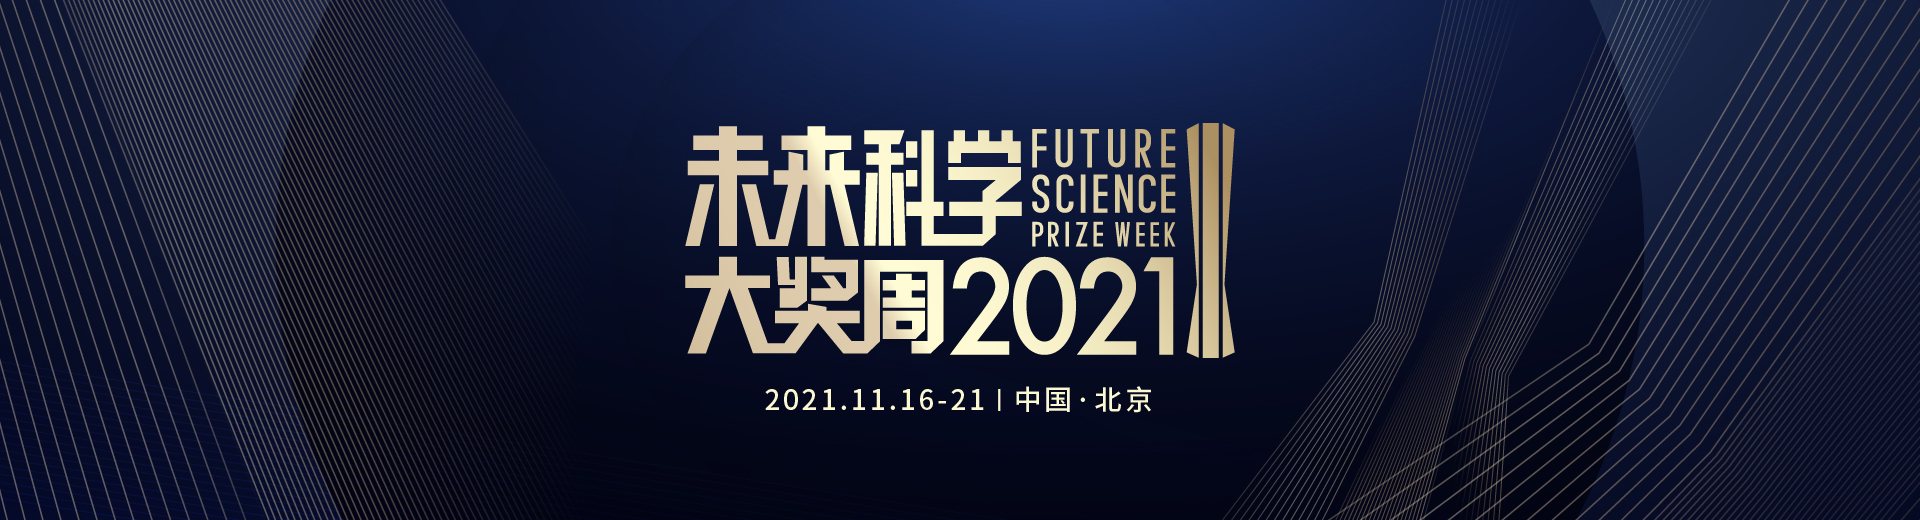 2021未来科学大奖周